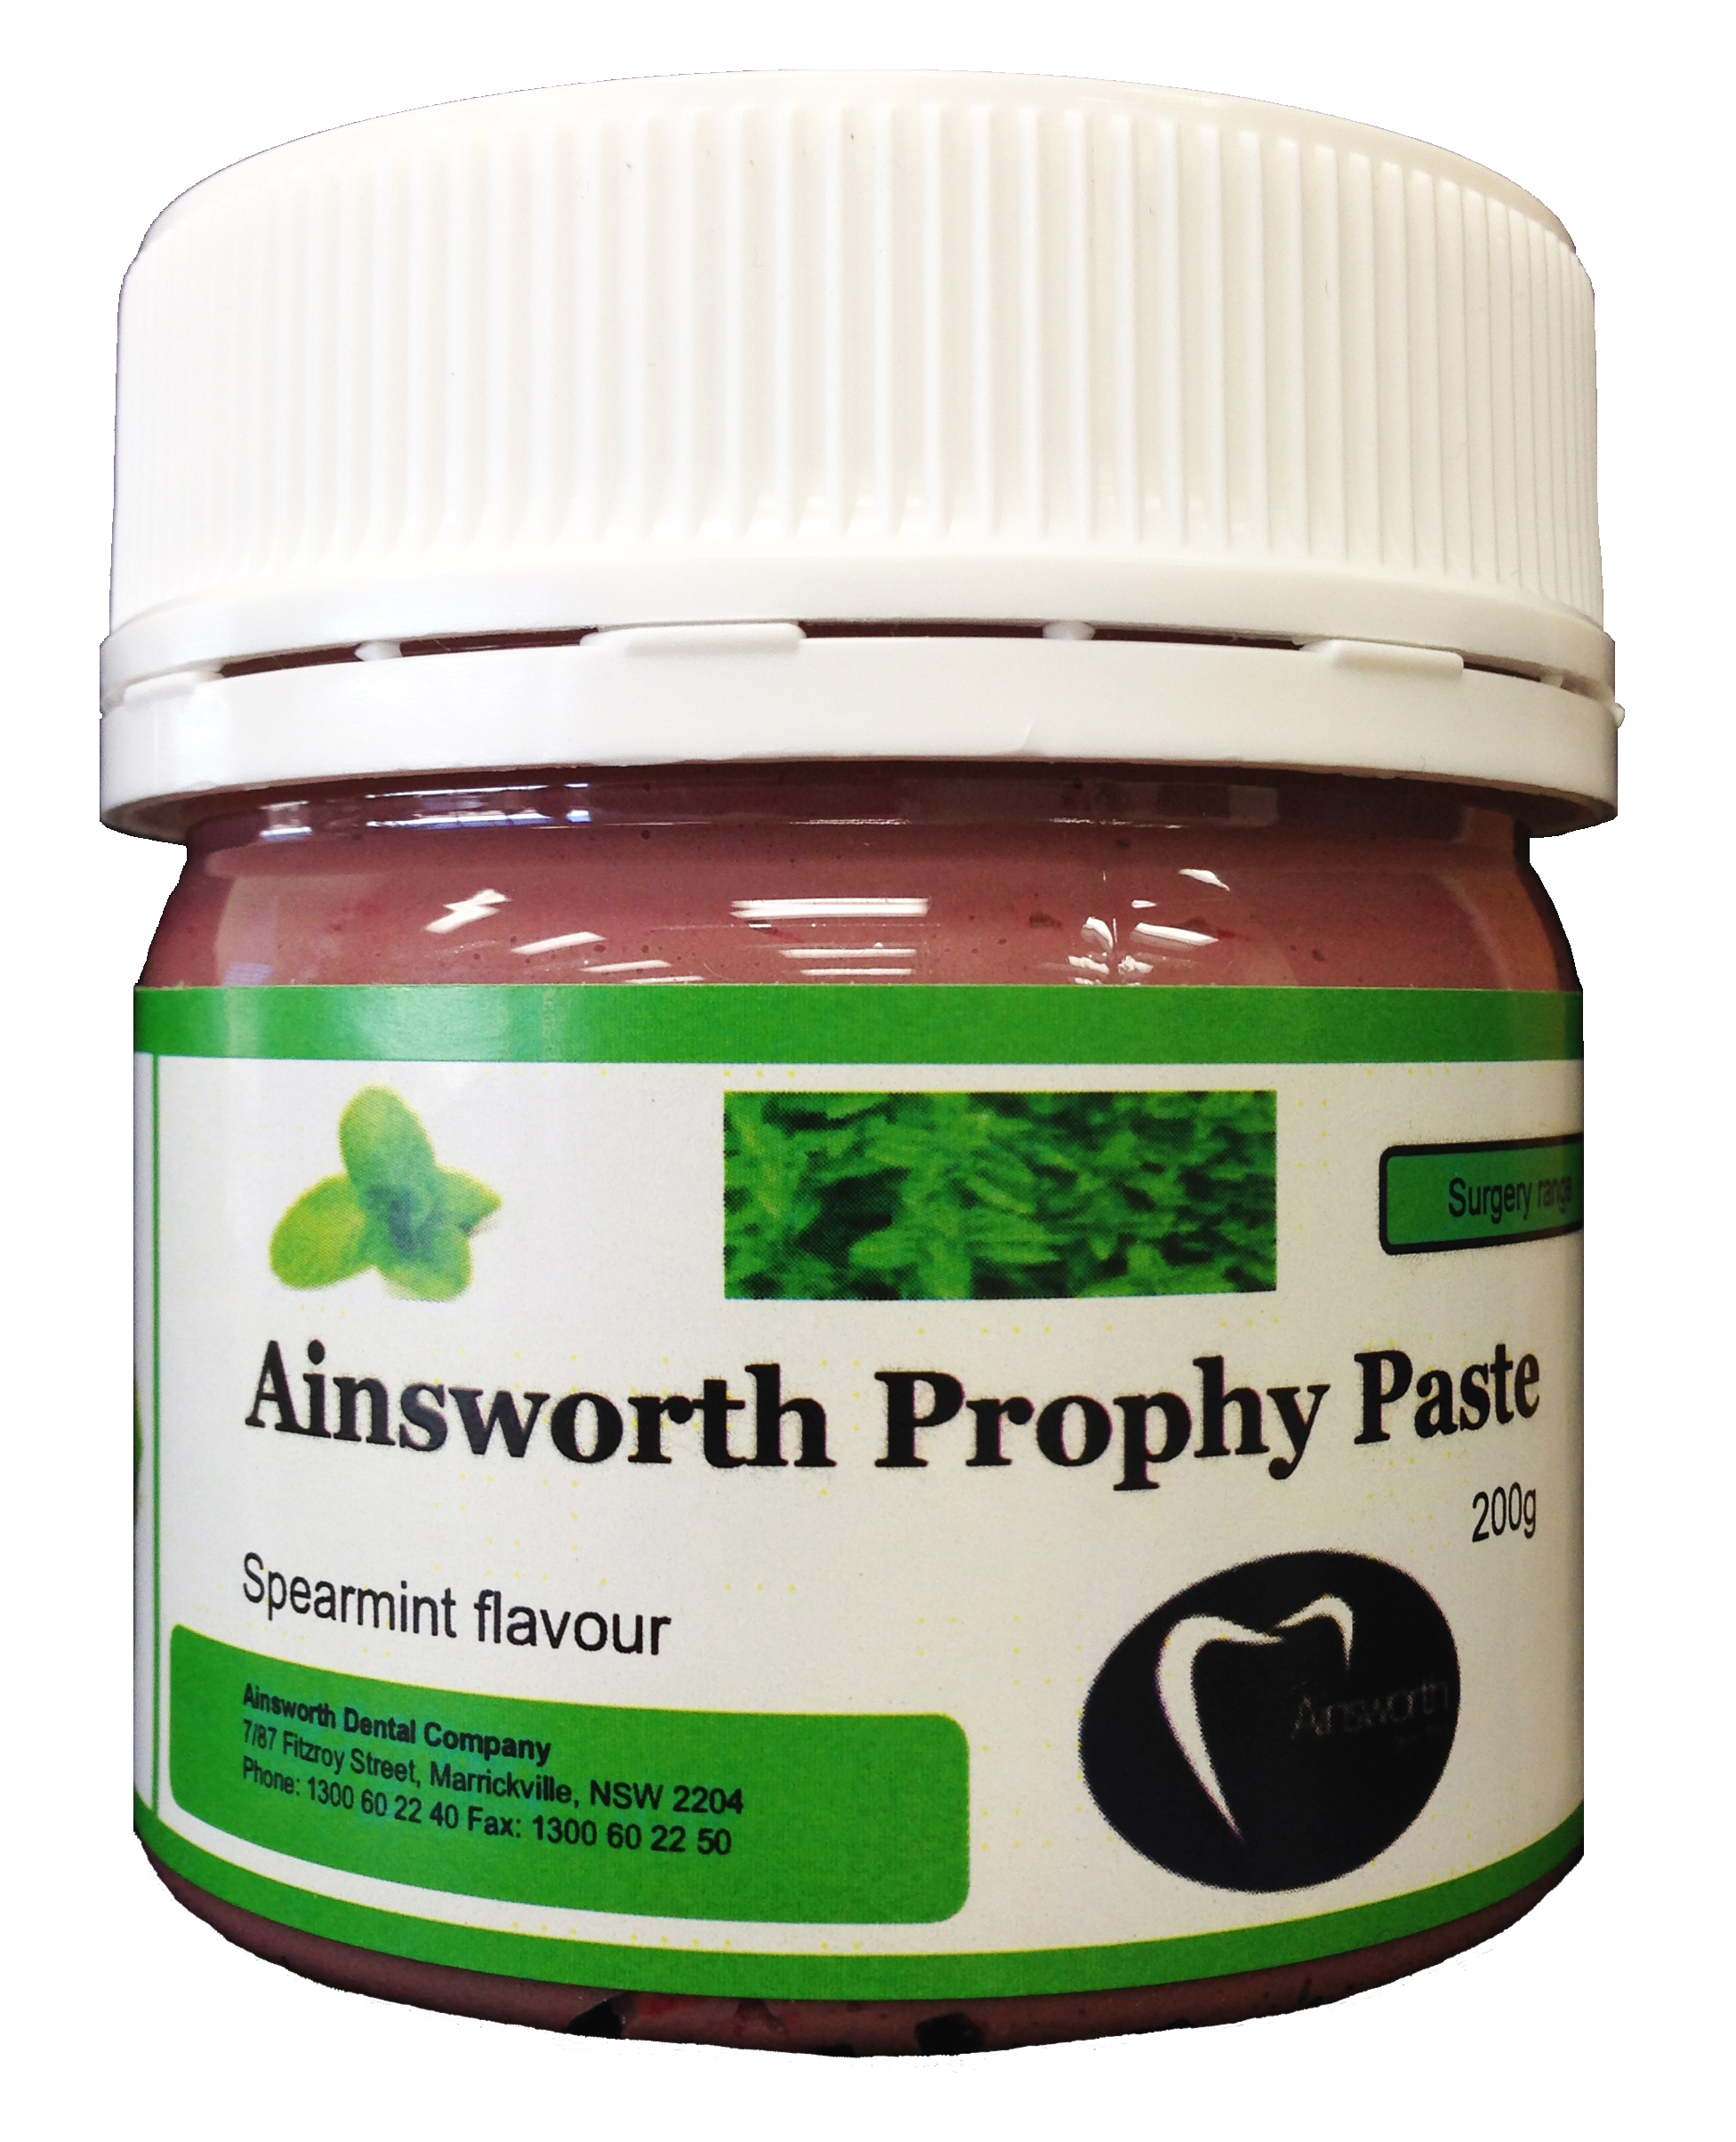 Ainsworth Prophylaxis Paste - Original Spearmint Flavour - 200g